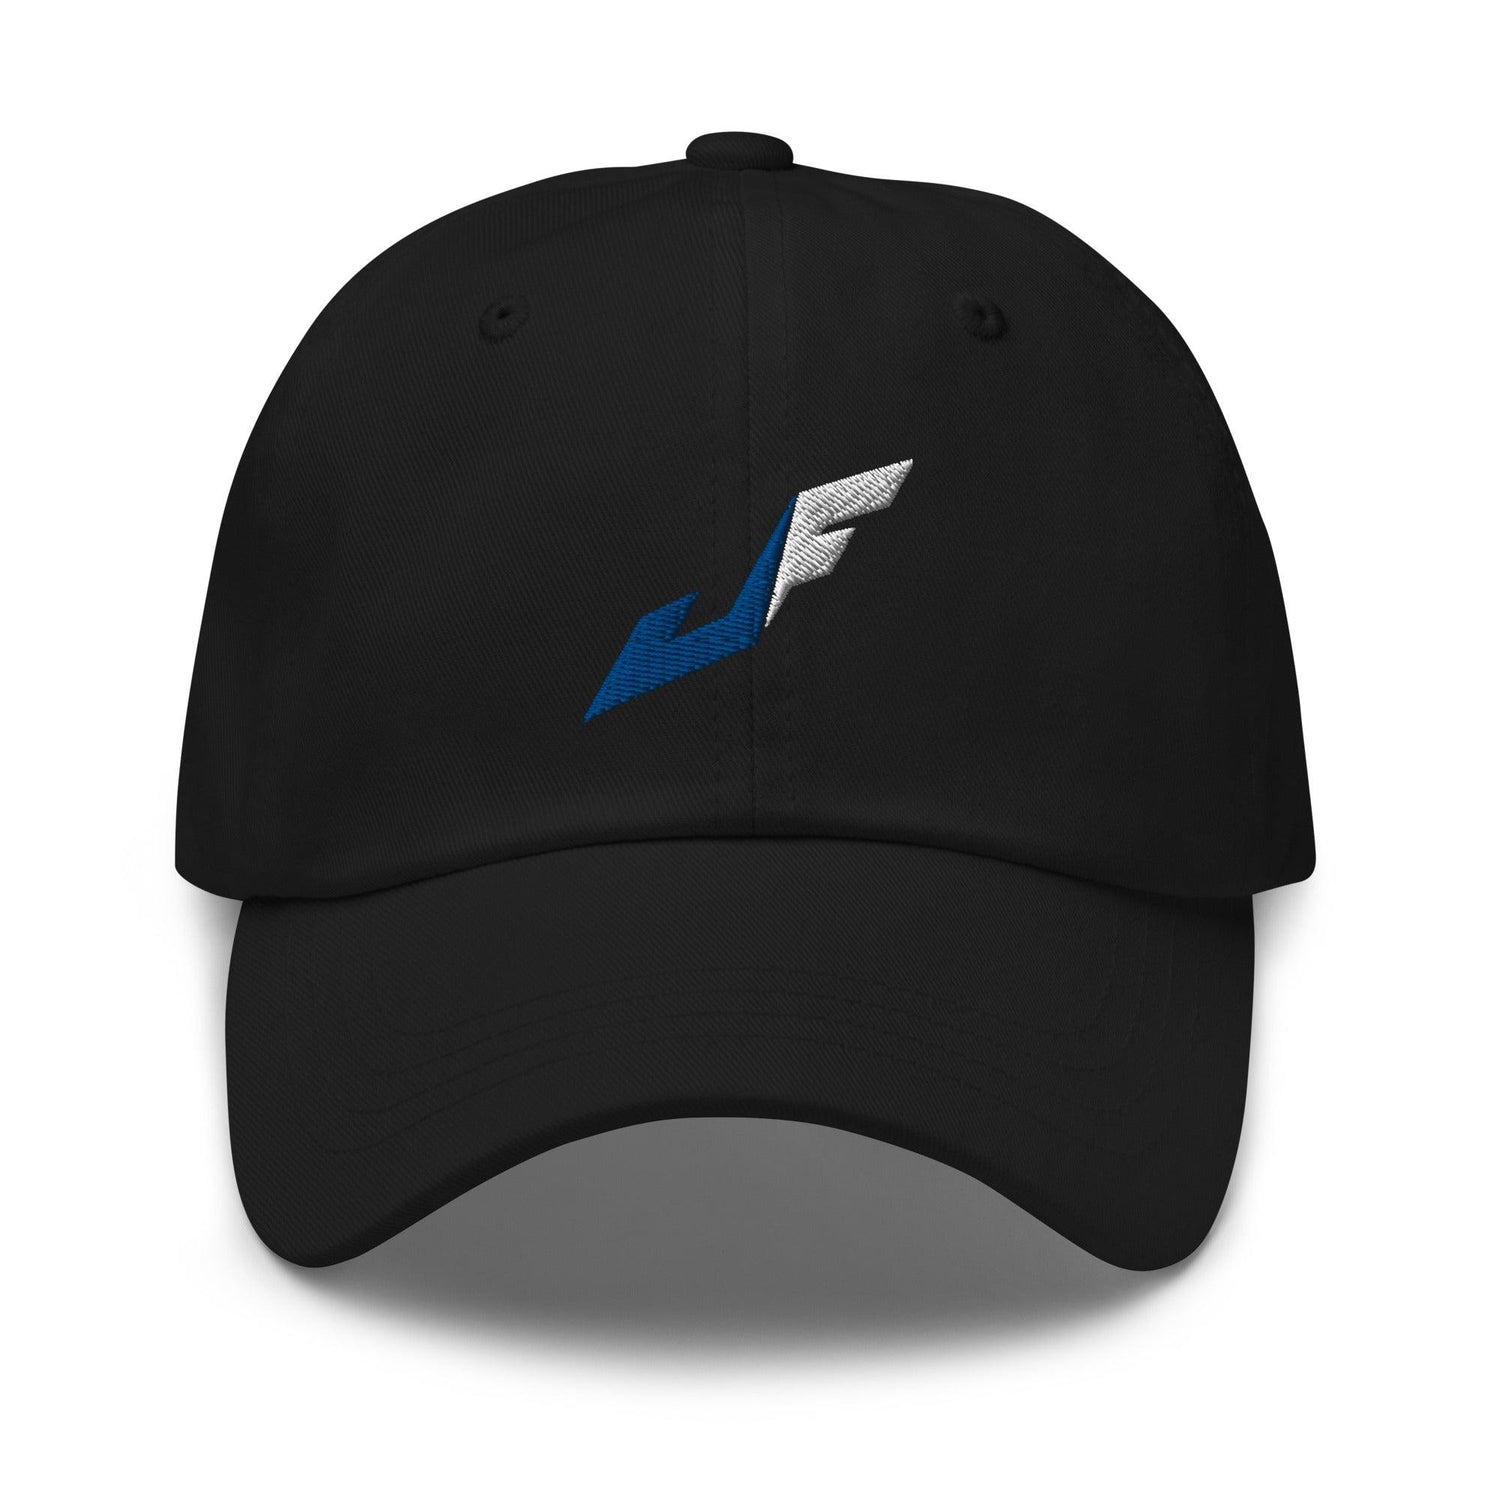 Jackson Ferris “JF” hat - Fan Arch